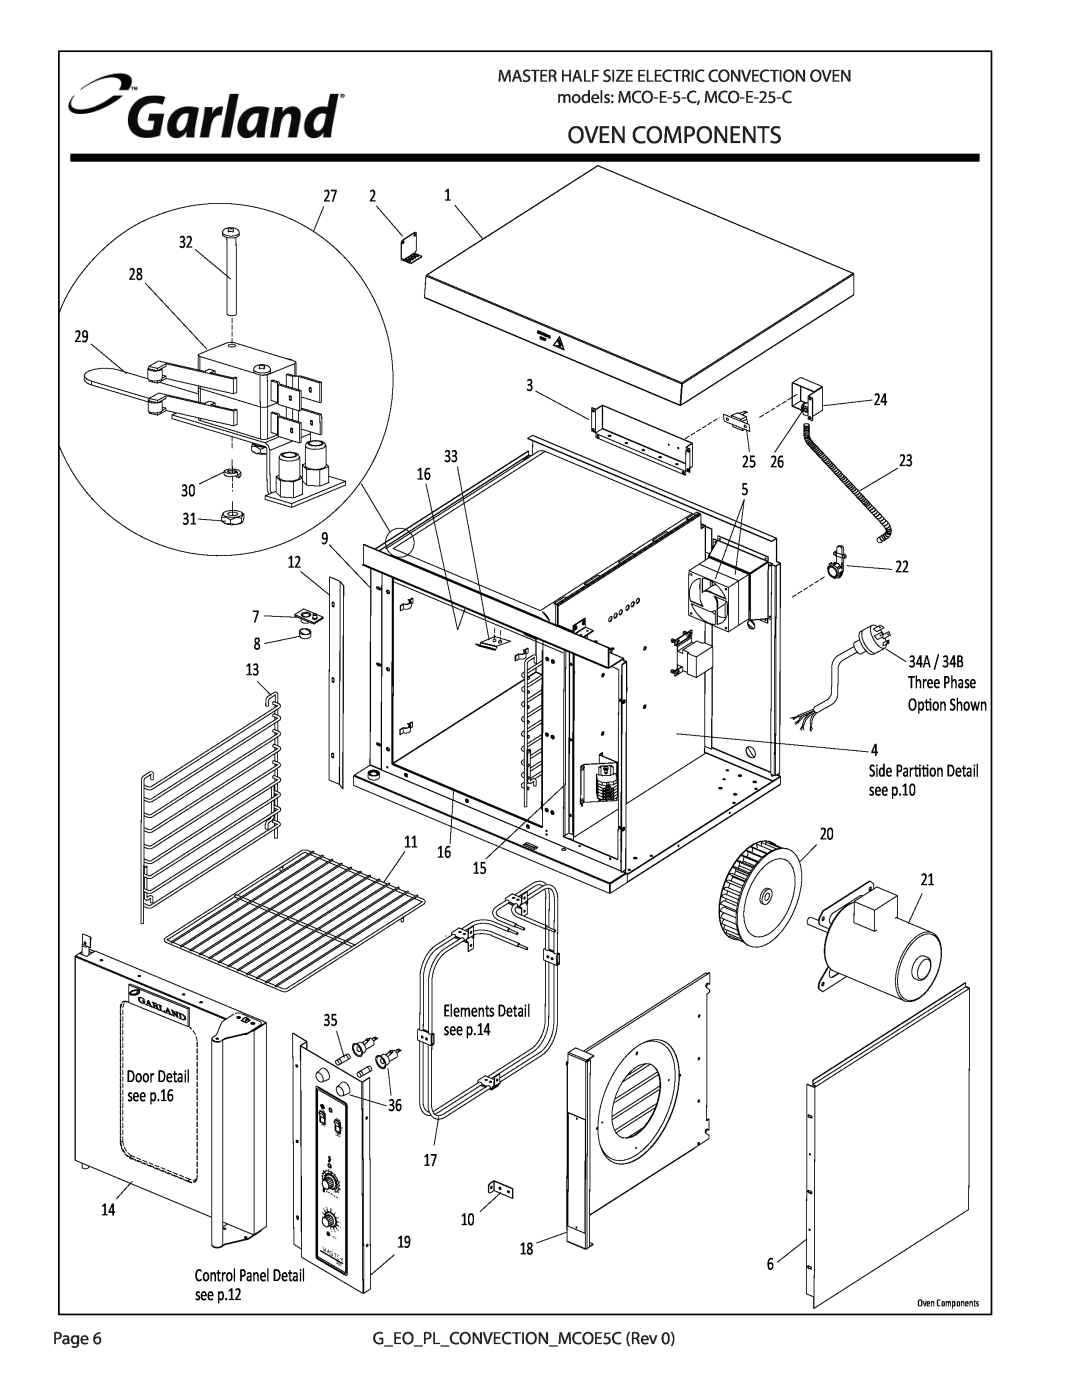 Garland MCO-E-5-C, MCO-E-25-C manual Oven Components 